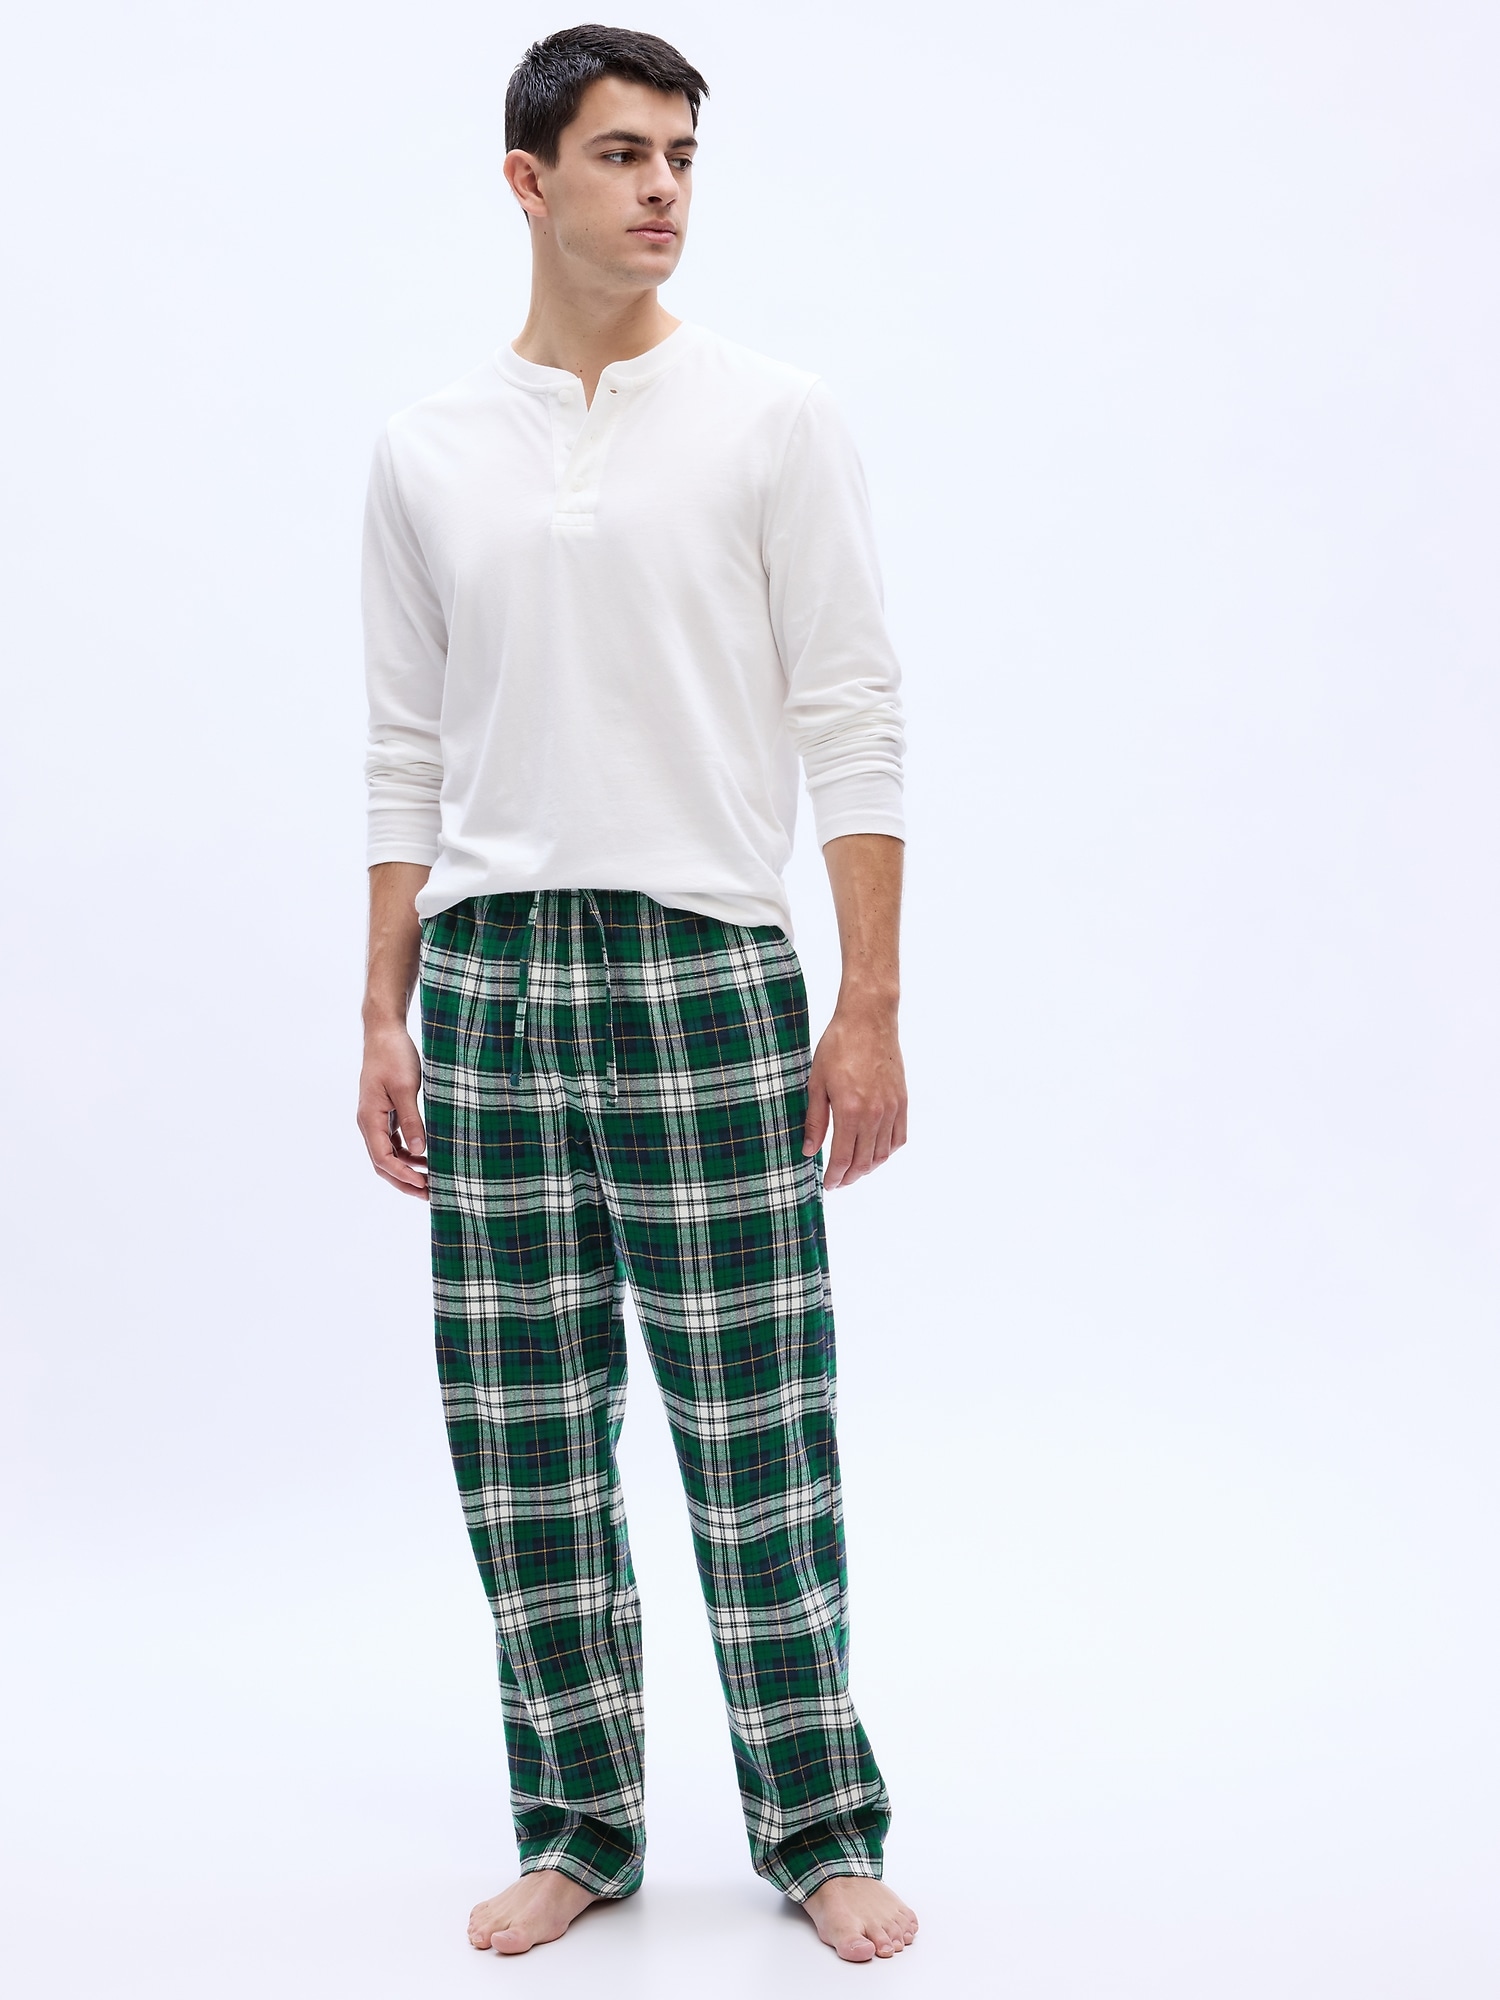 Plaid Pajama Pants for Men